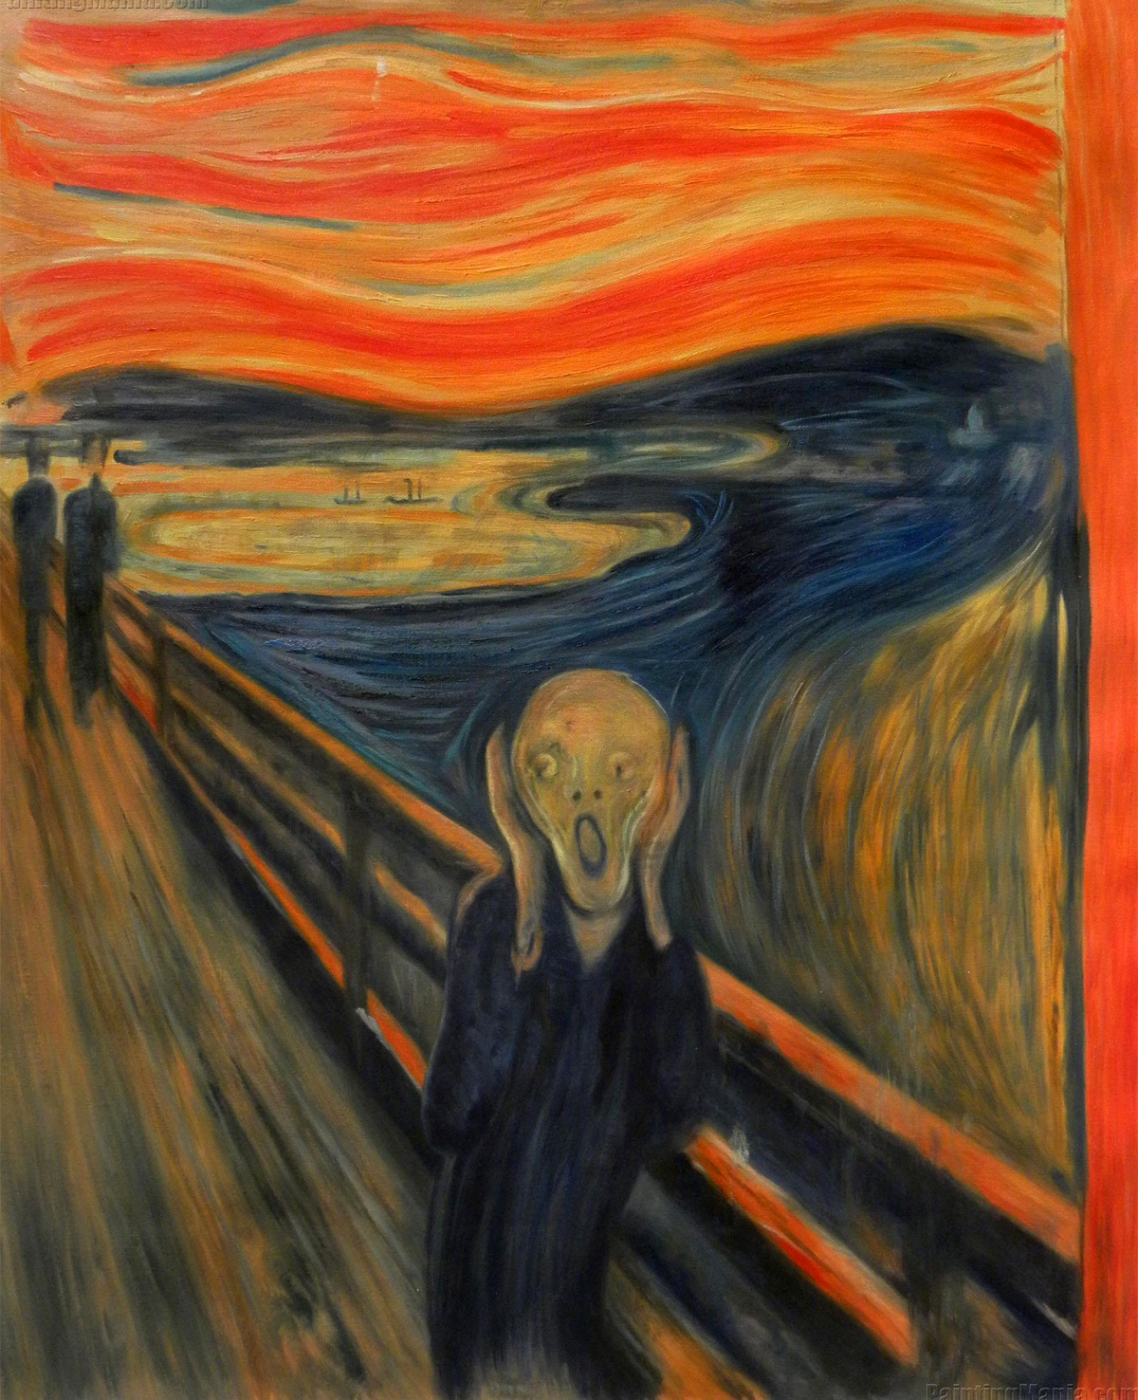 Câu chuyện đau buồn phía sau kiệt tác ‘Tiếng thét’ của Edvard Munch